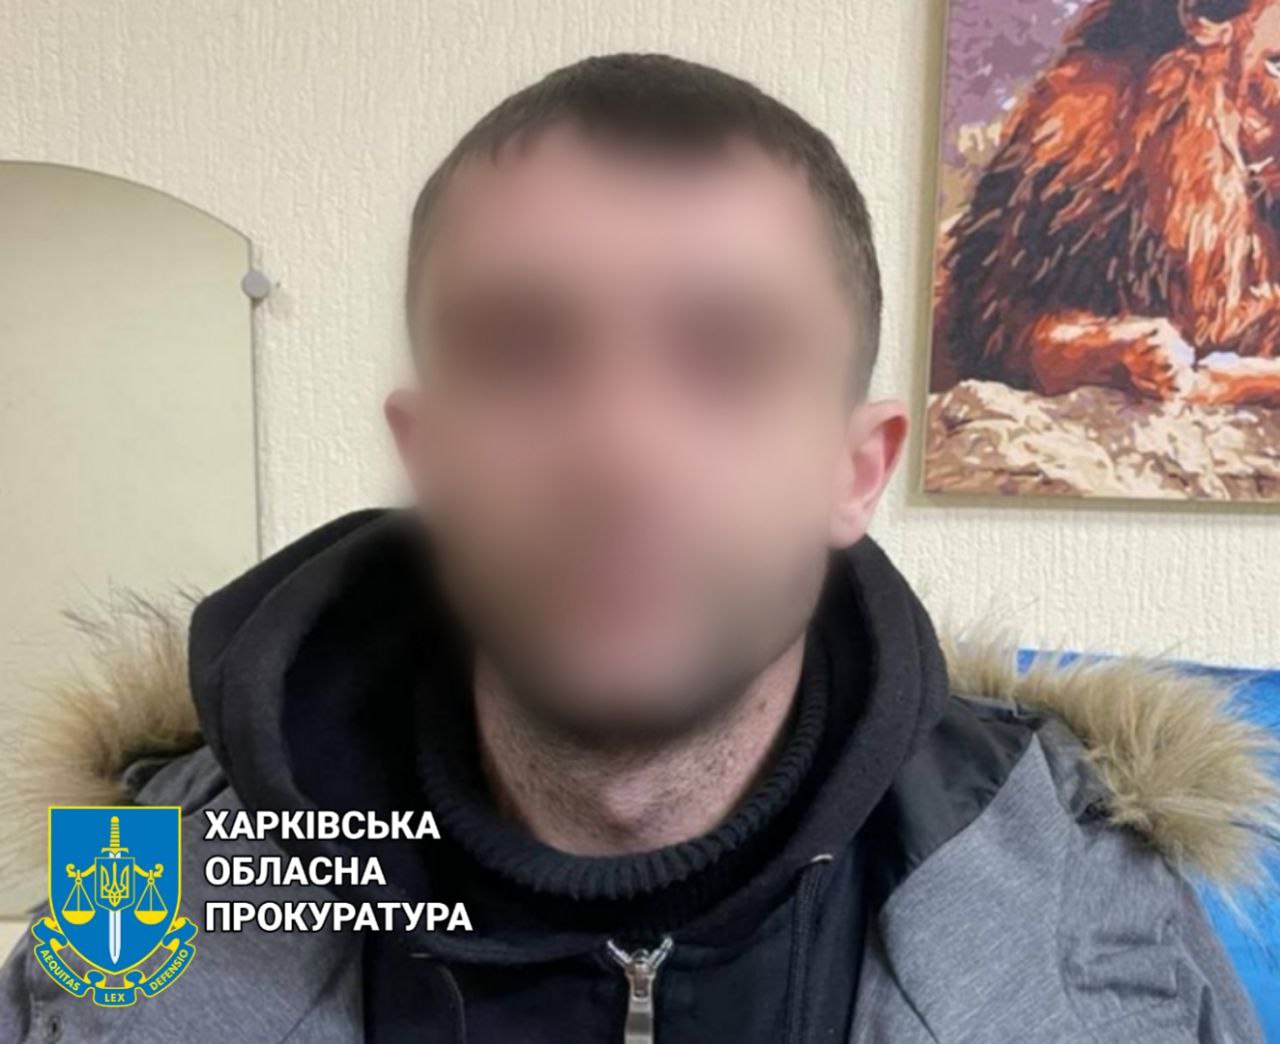 Прокурори Харкова довели вину ще одного закладника, який збирався збувати психотропи в Харкові